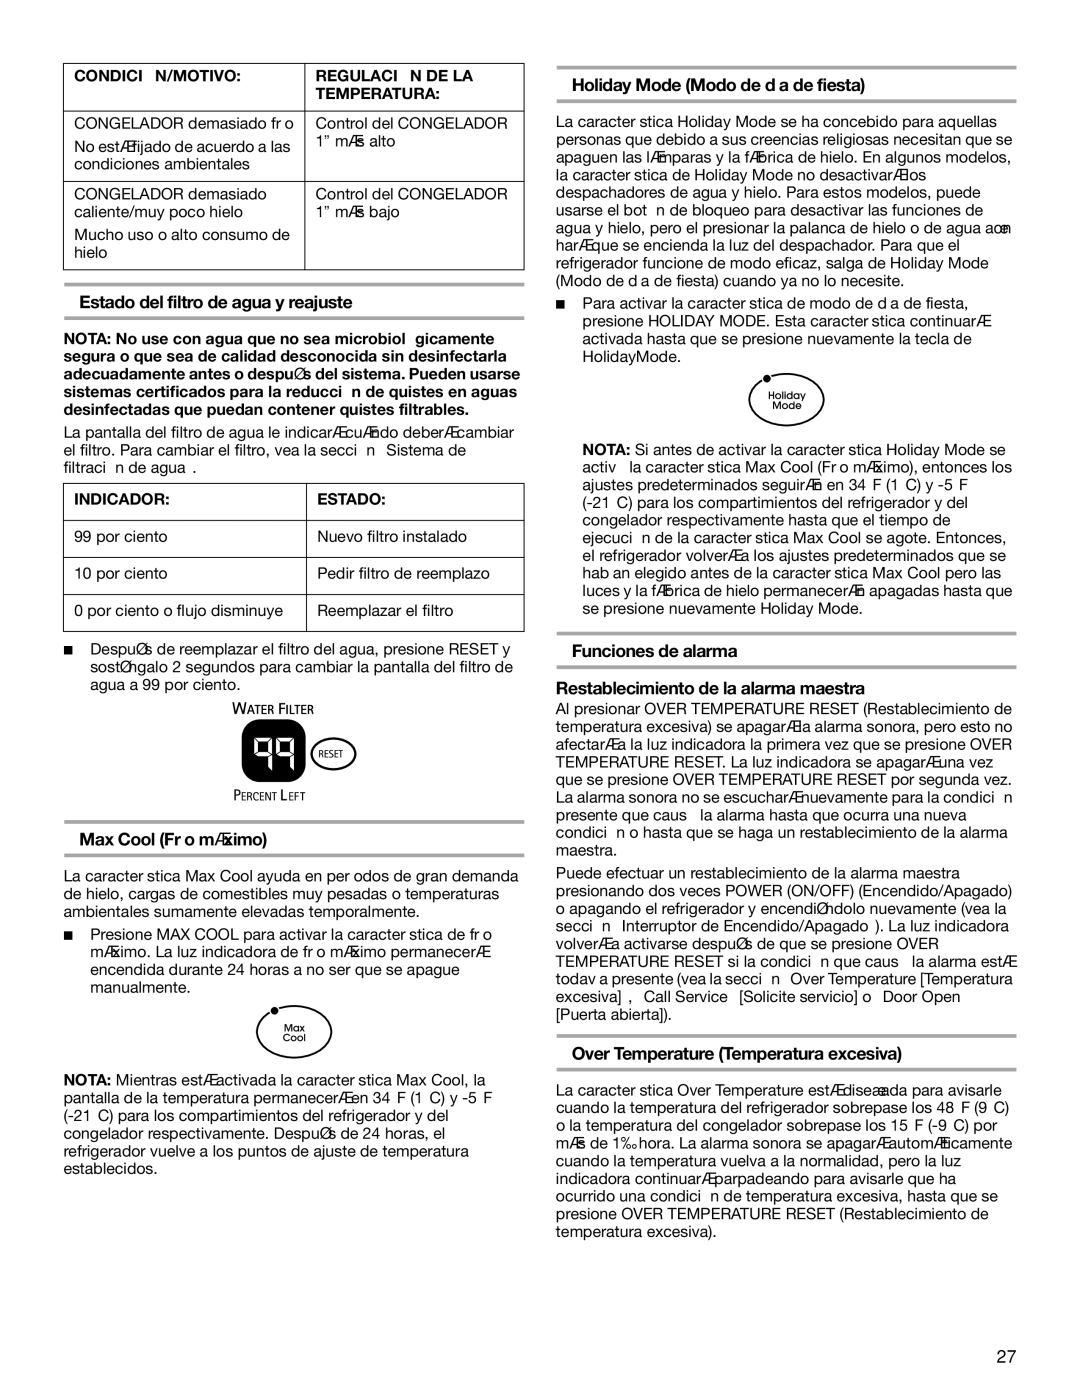 KitchenAid BUILT-IN REFRIGERATOR manual Estado del filtro de agua y reajuste, Max Cool Frío máximo 